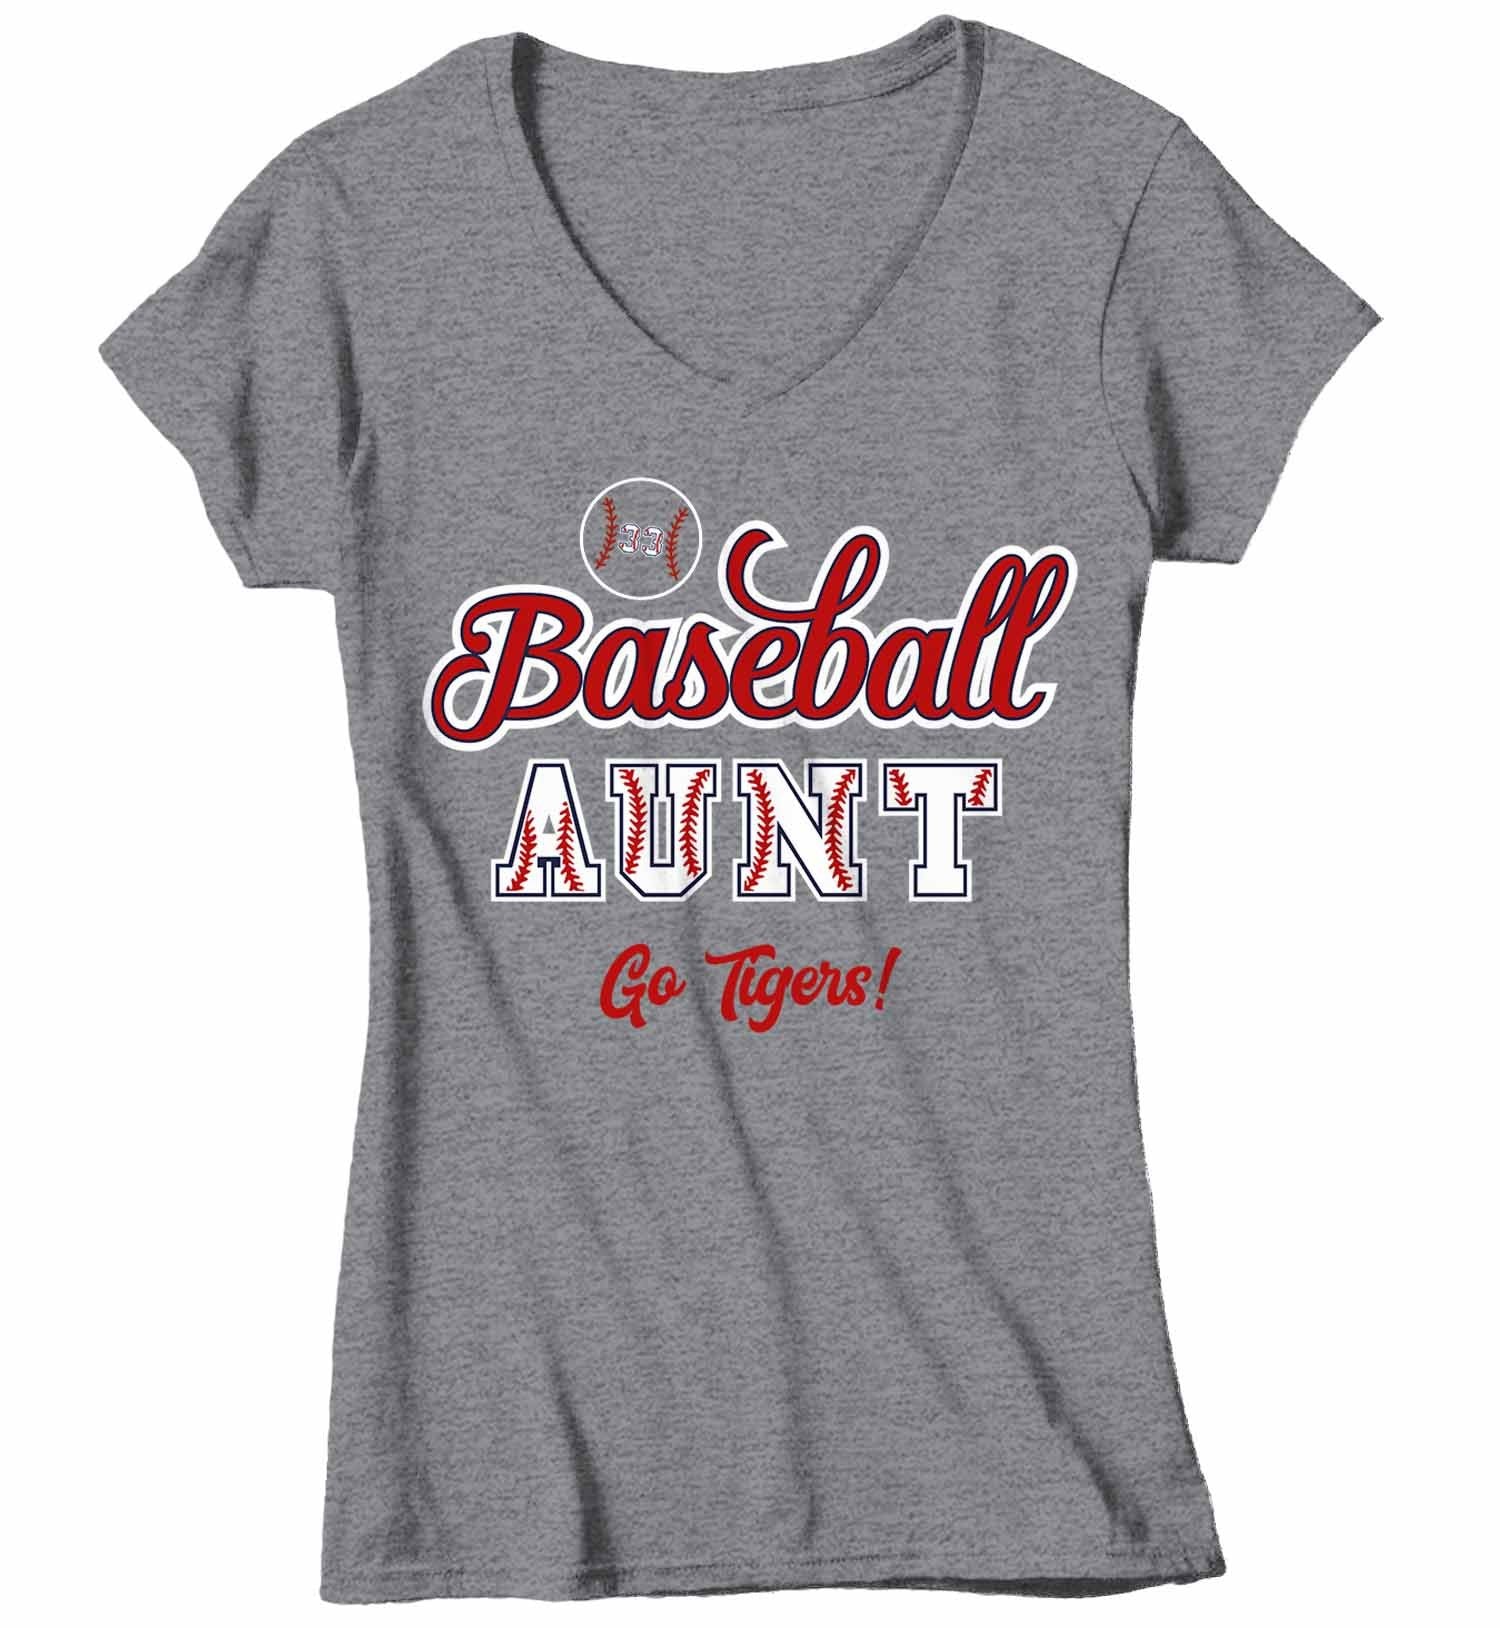 custom baseball team shirts